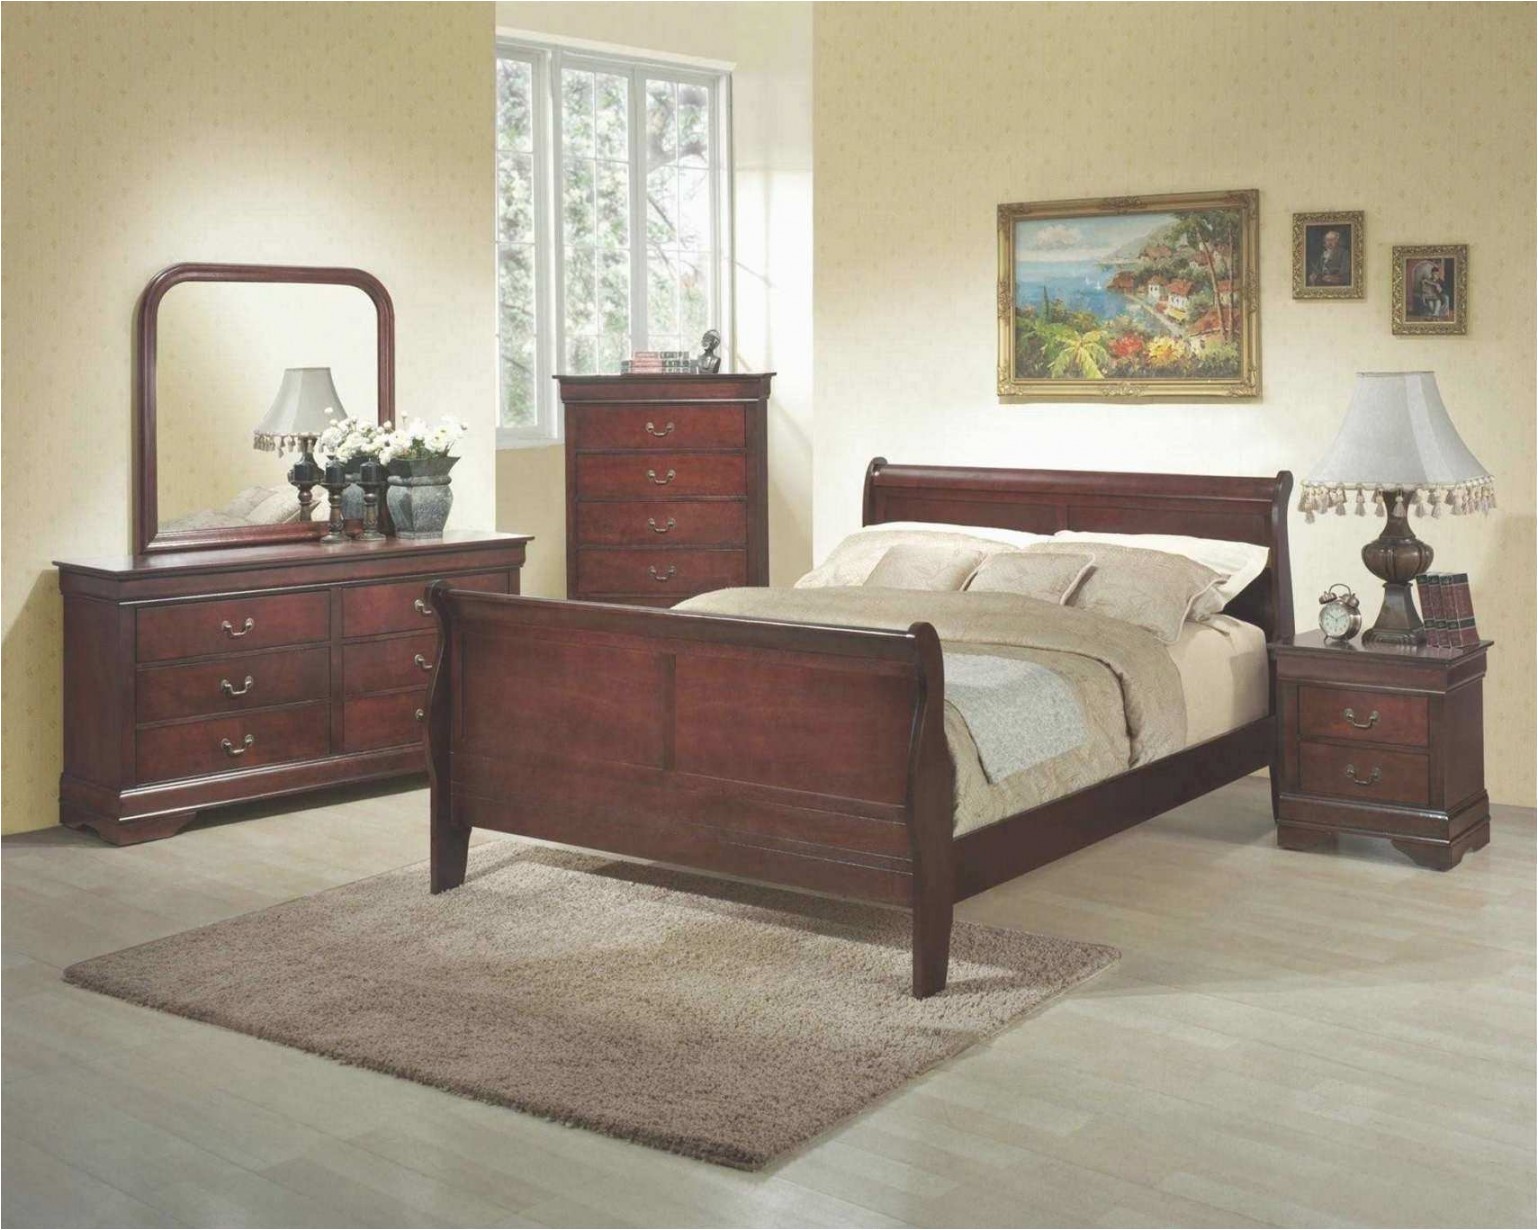 thomasville elysee bedroom furniture